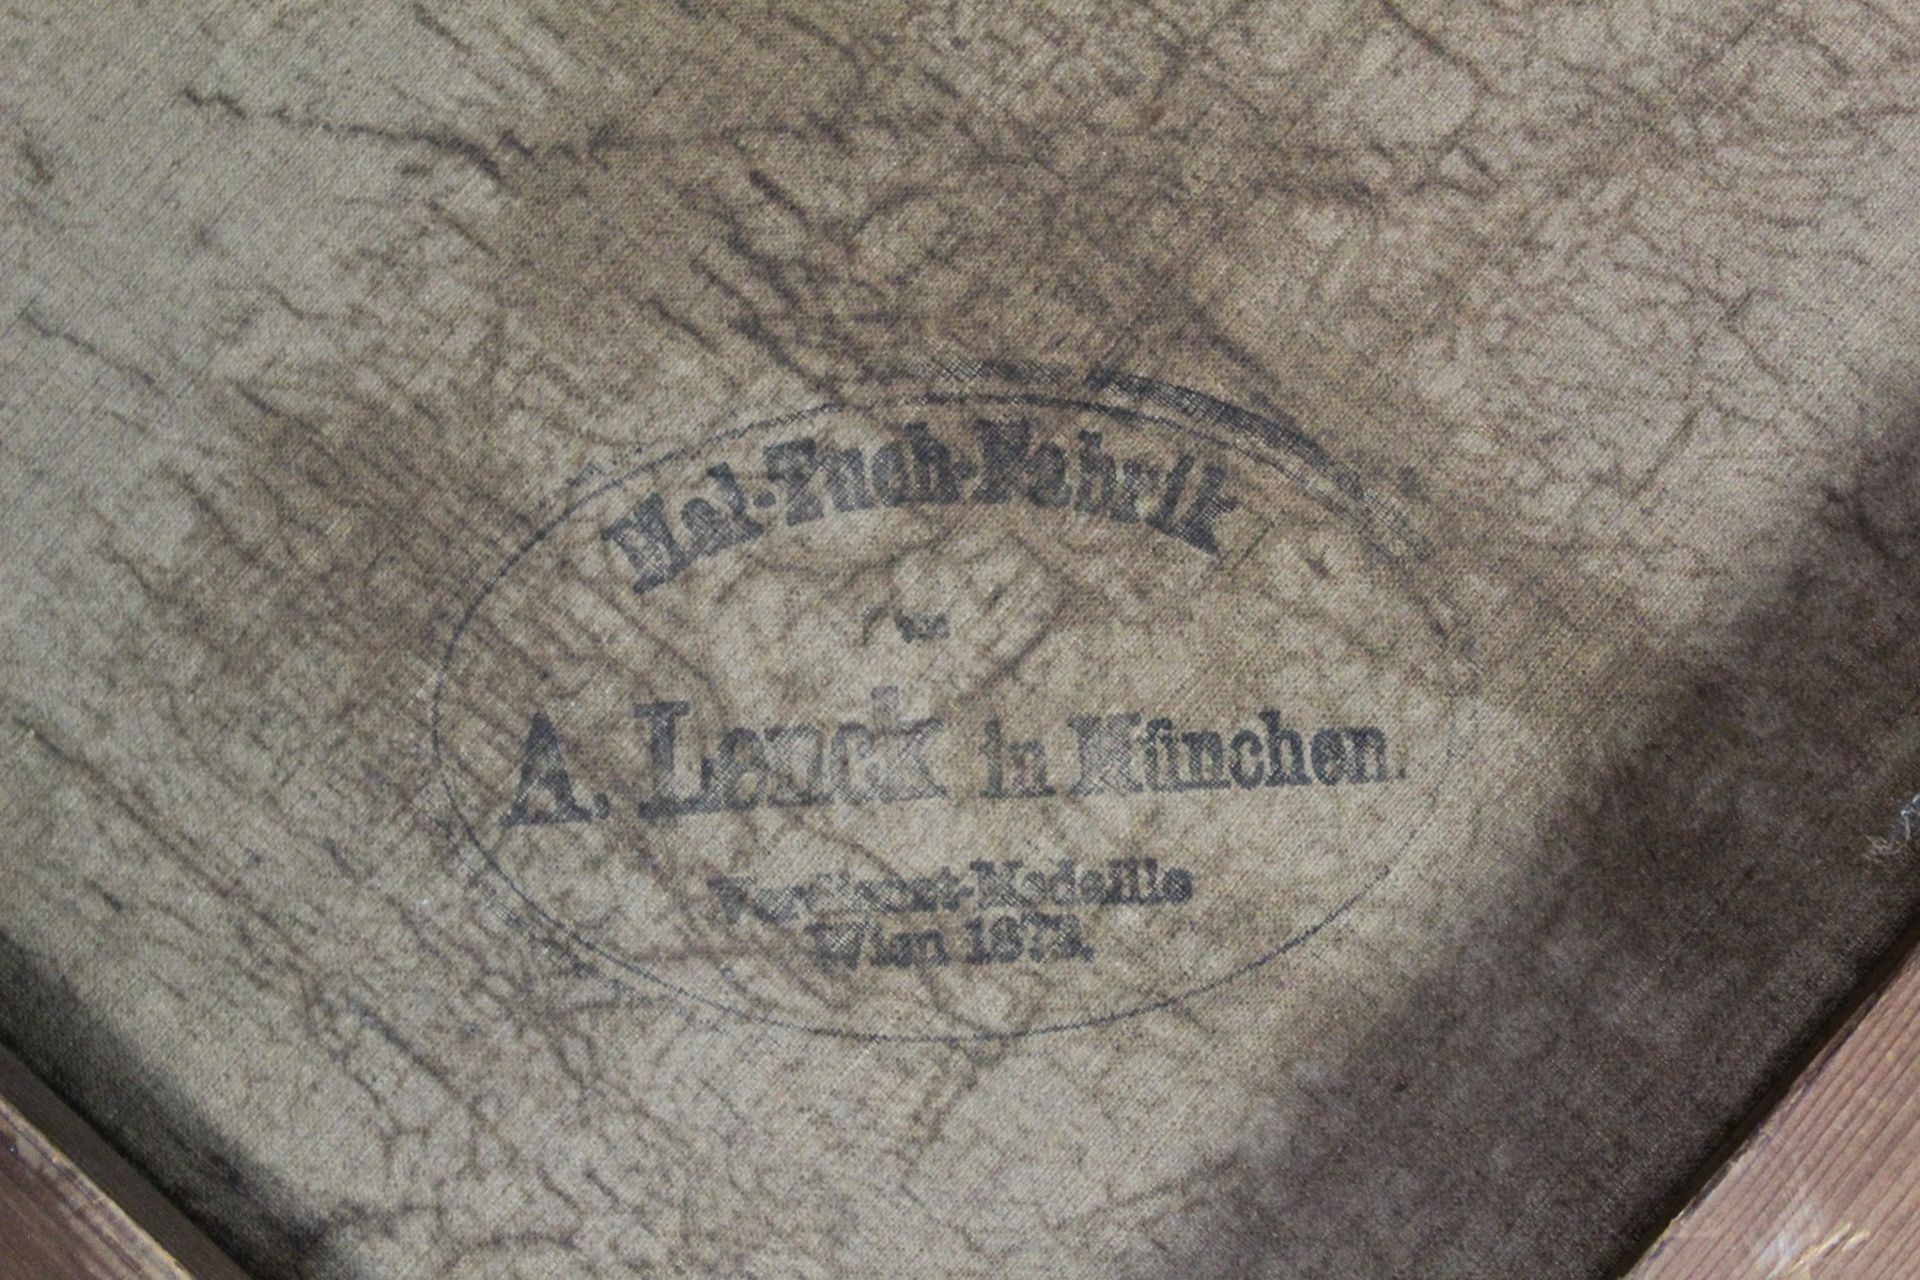 Wex, Willibald, 1831 Karlstein/Reichenhall - 1892 München - Image 9 of 10